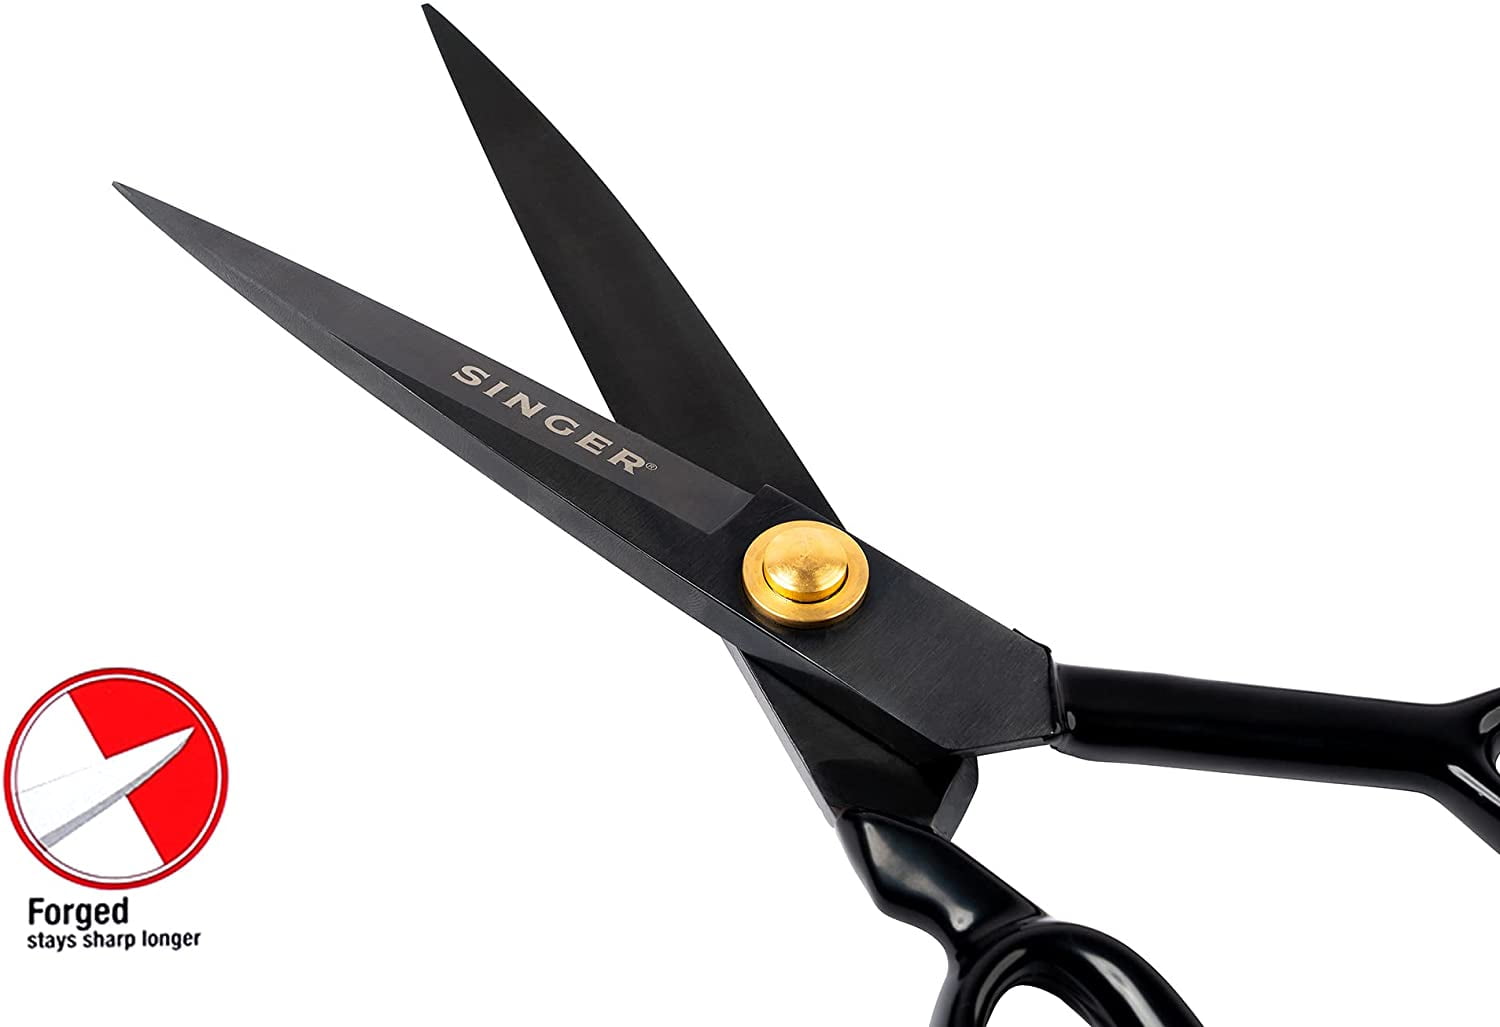 Singer ProSeries Forged Tailor Scissors 10-Black